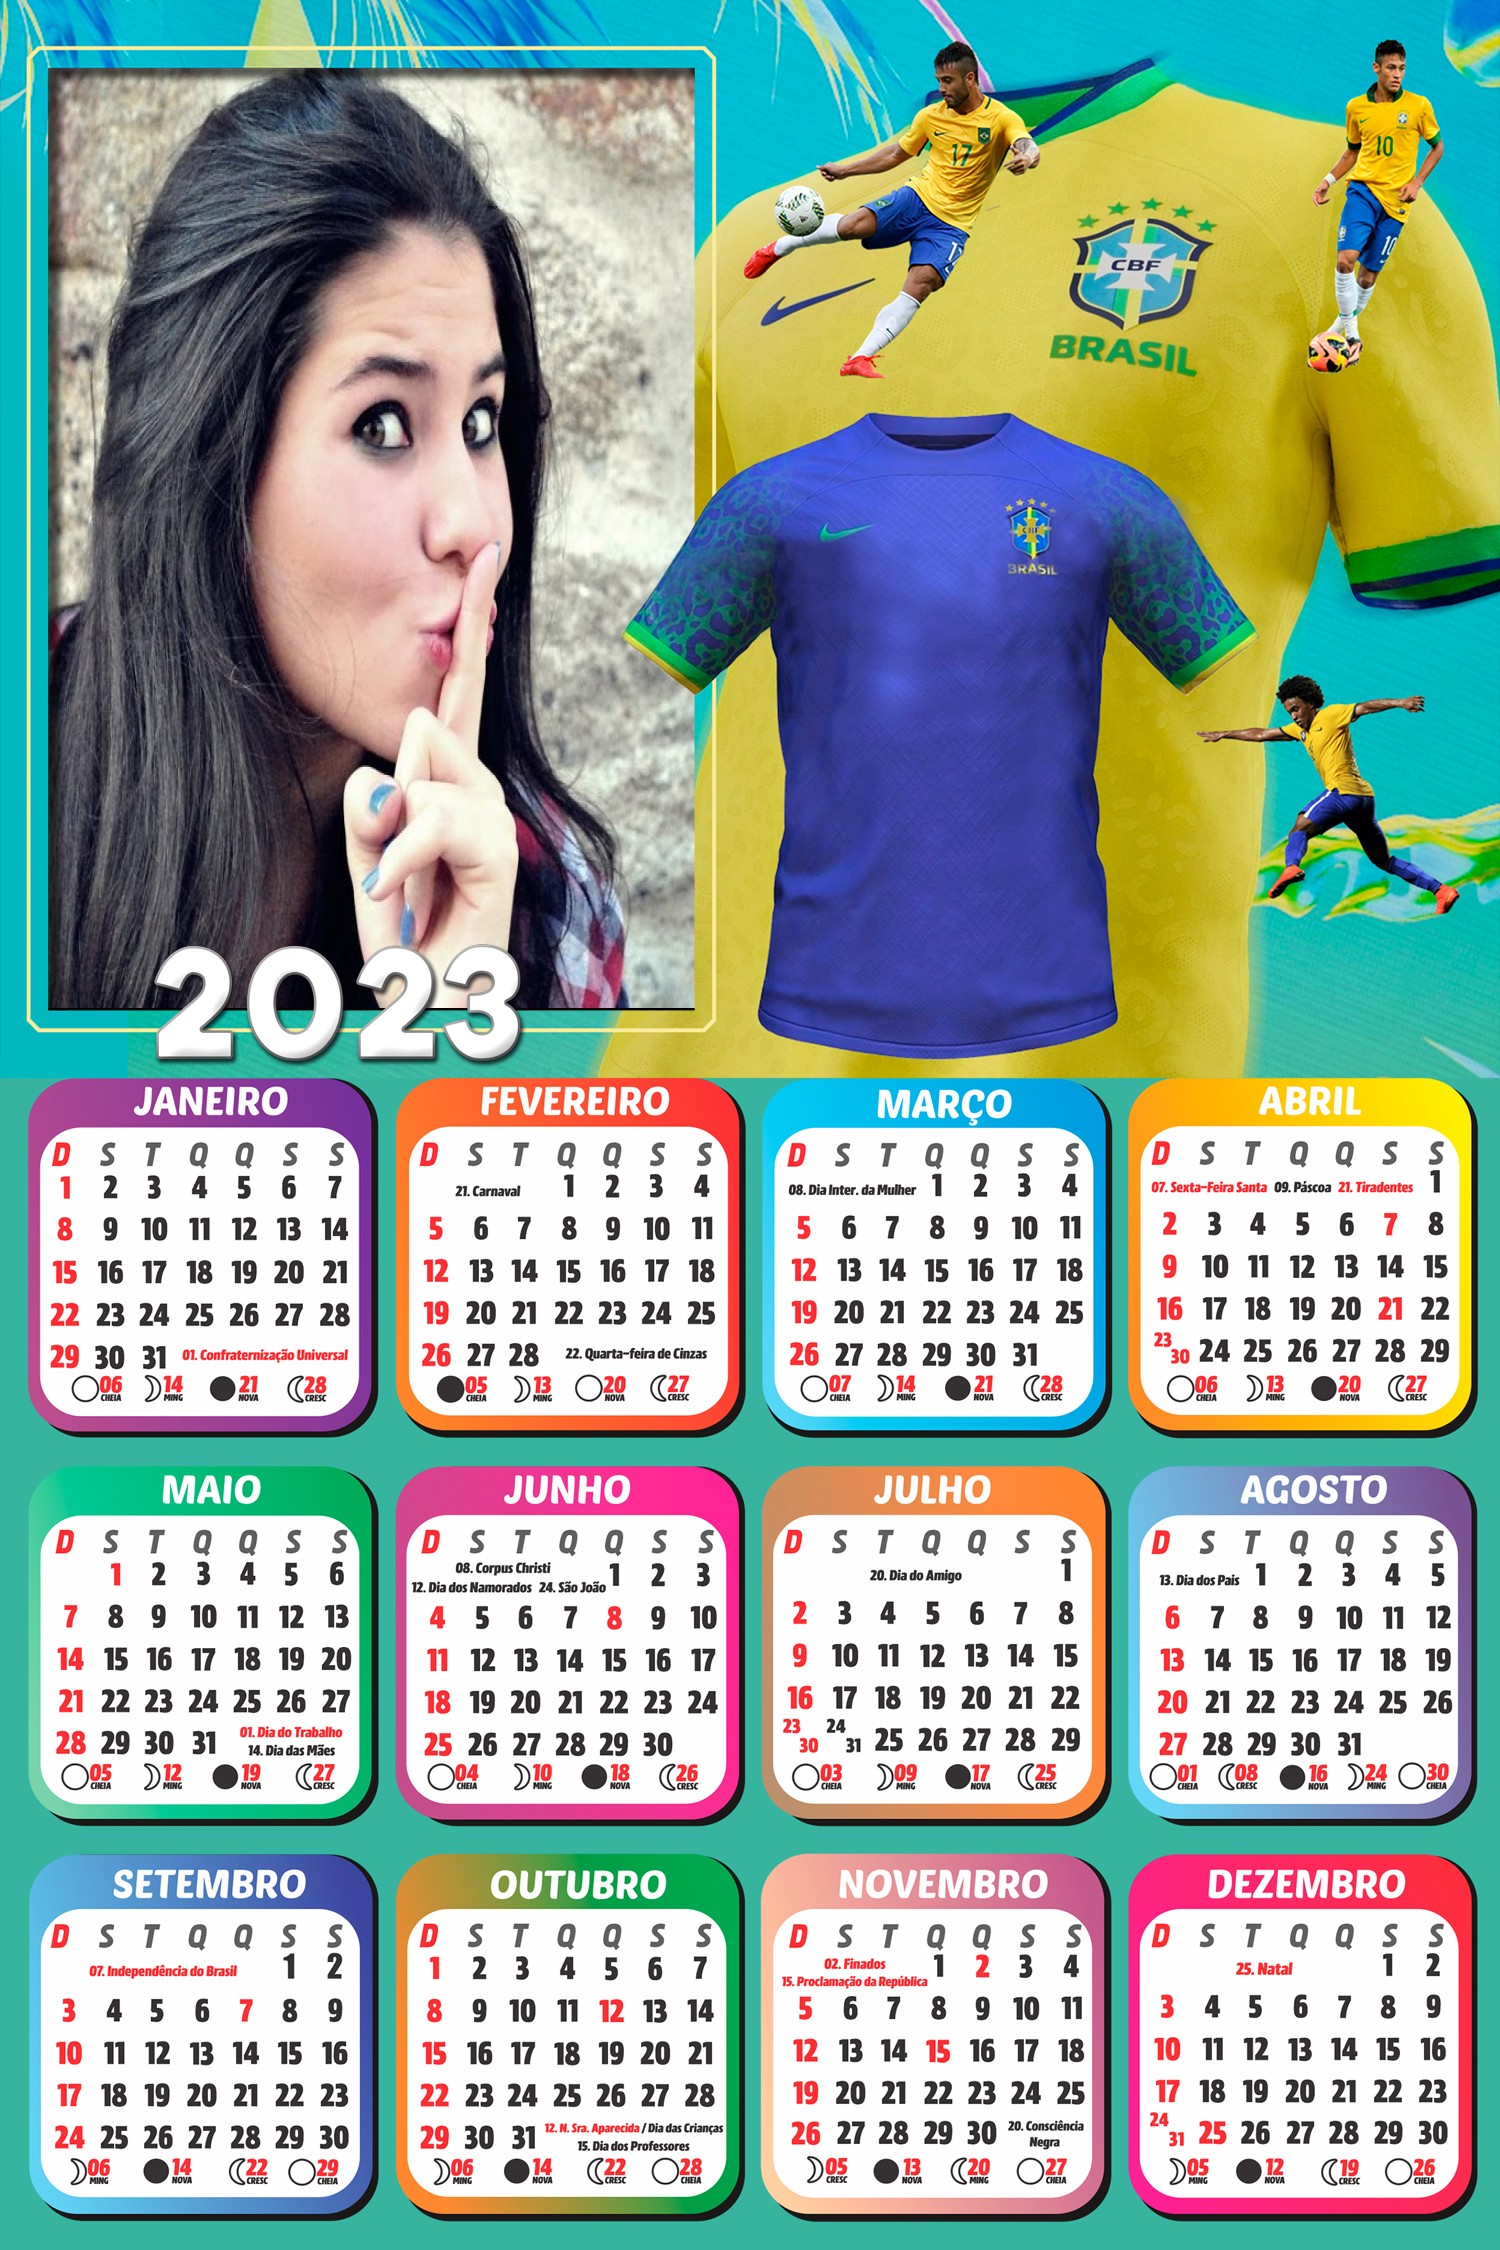 montagem-de-fotos-2023-camiseta-selecao-brasileira